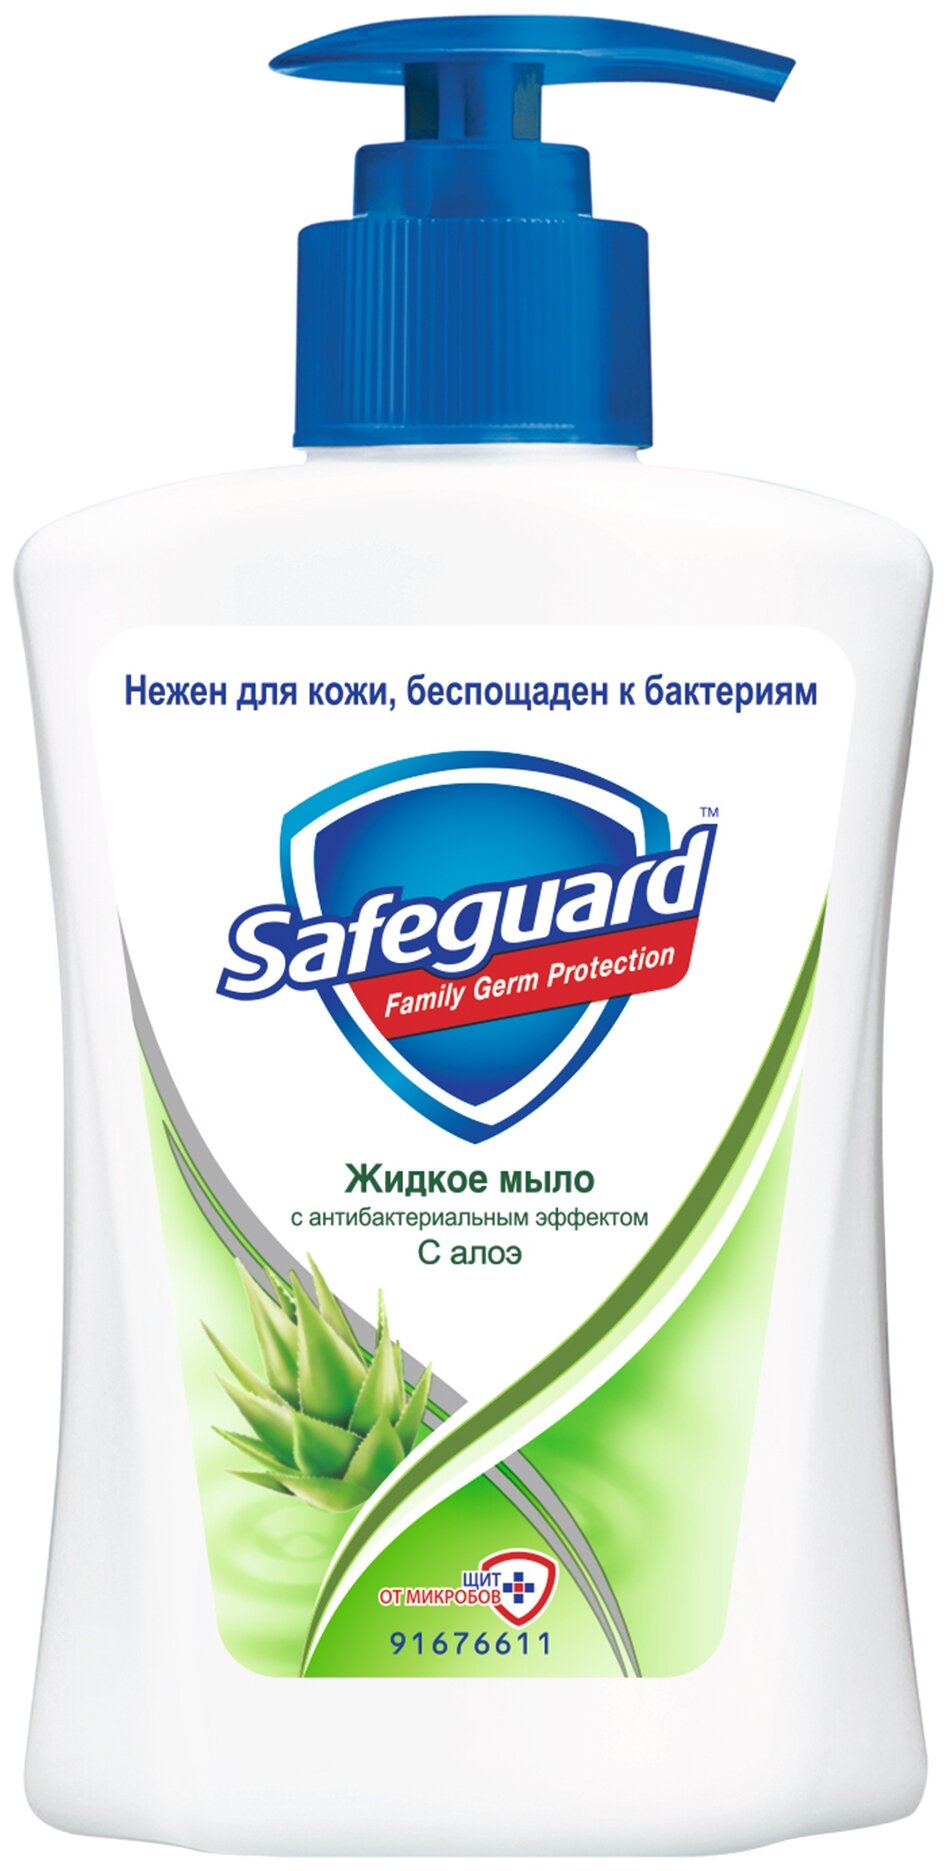 Жидкое мыло Safeguard с Алоэ, 225 мл - фото №2